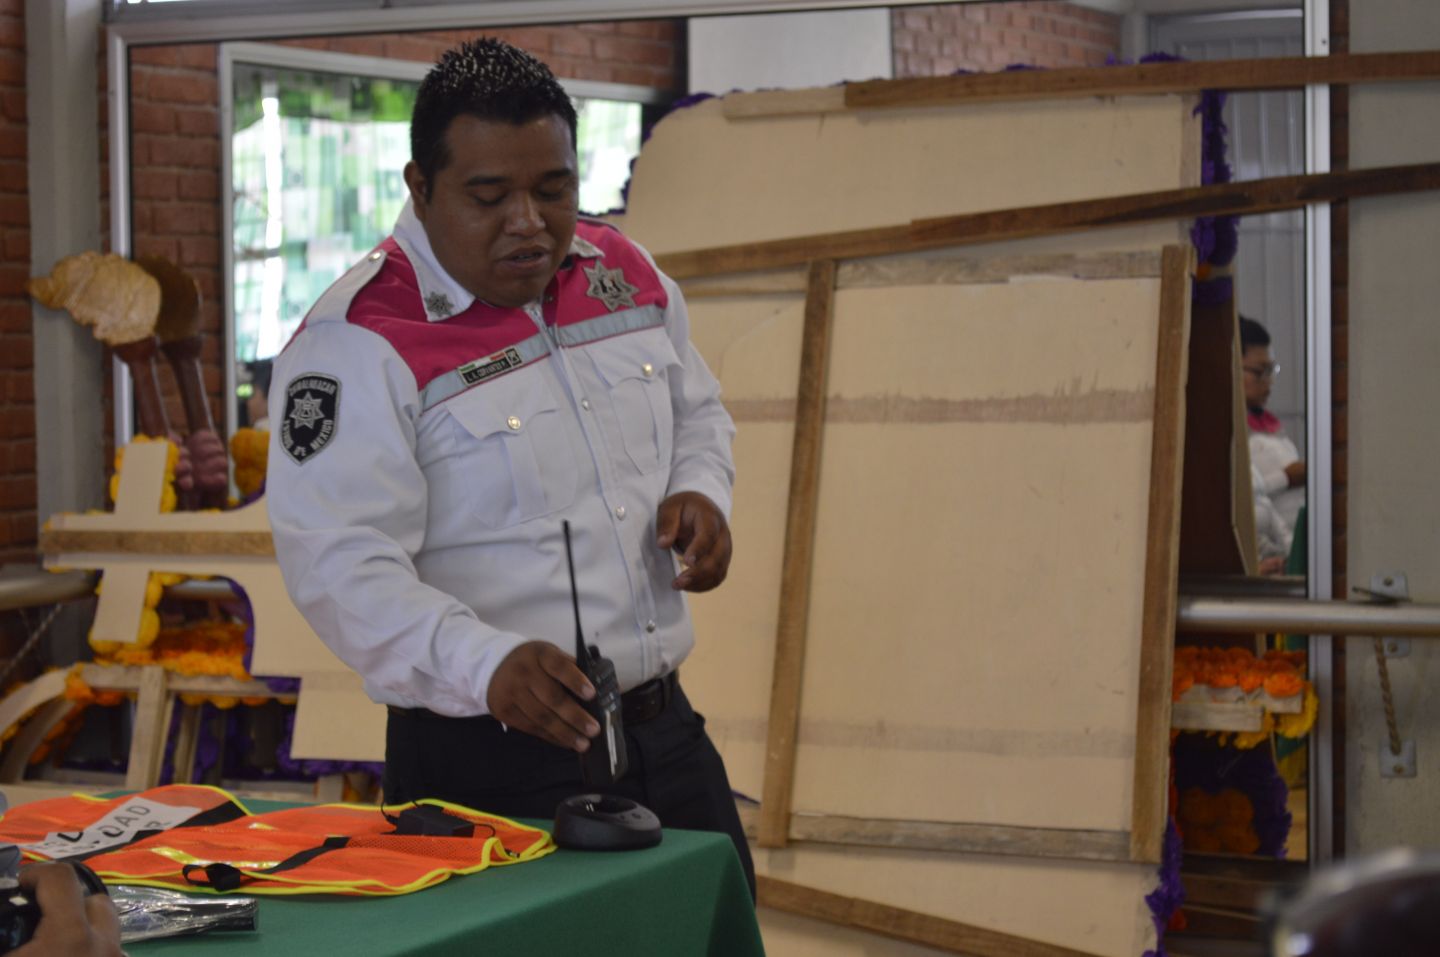 Capacitan a Comités Escolares de Chimalhuacán para prevenir delitos